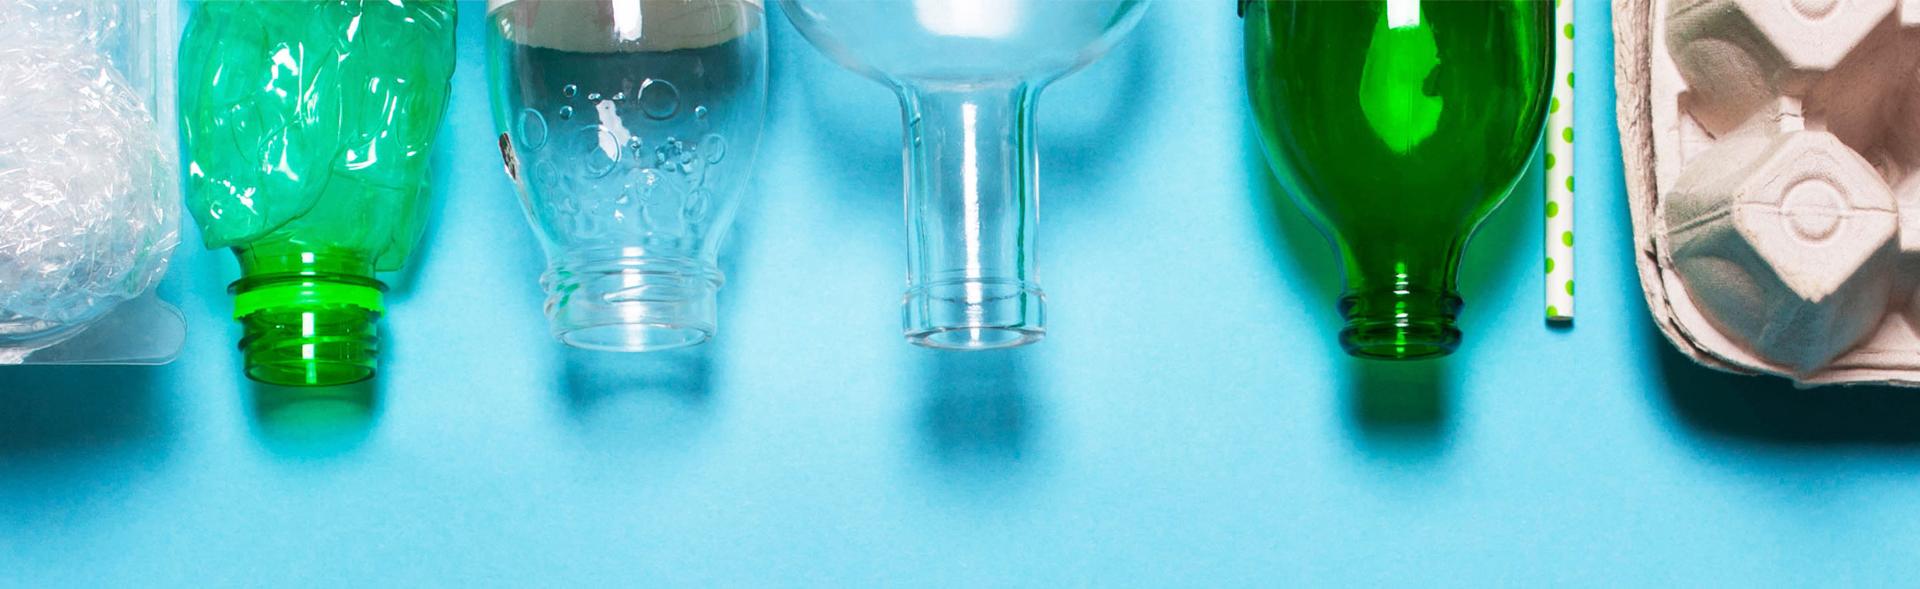 Emballager af plast, glas og pap ligger på blå bord